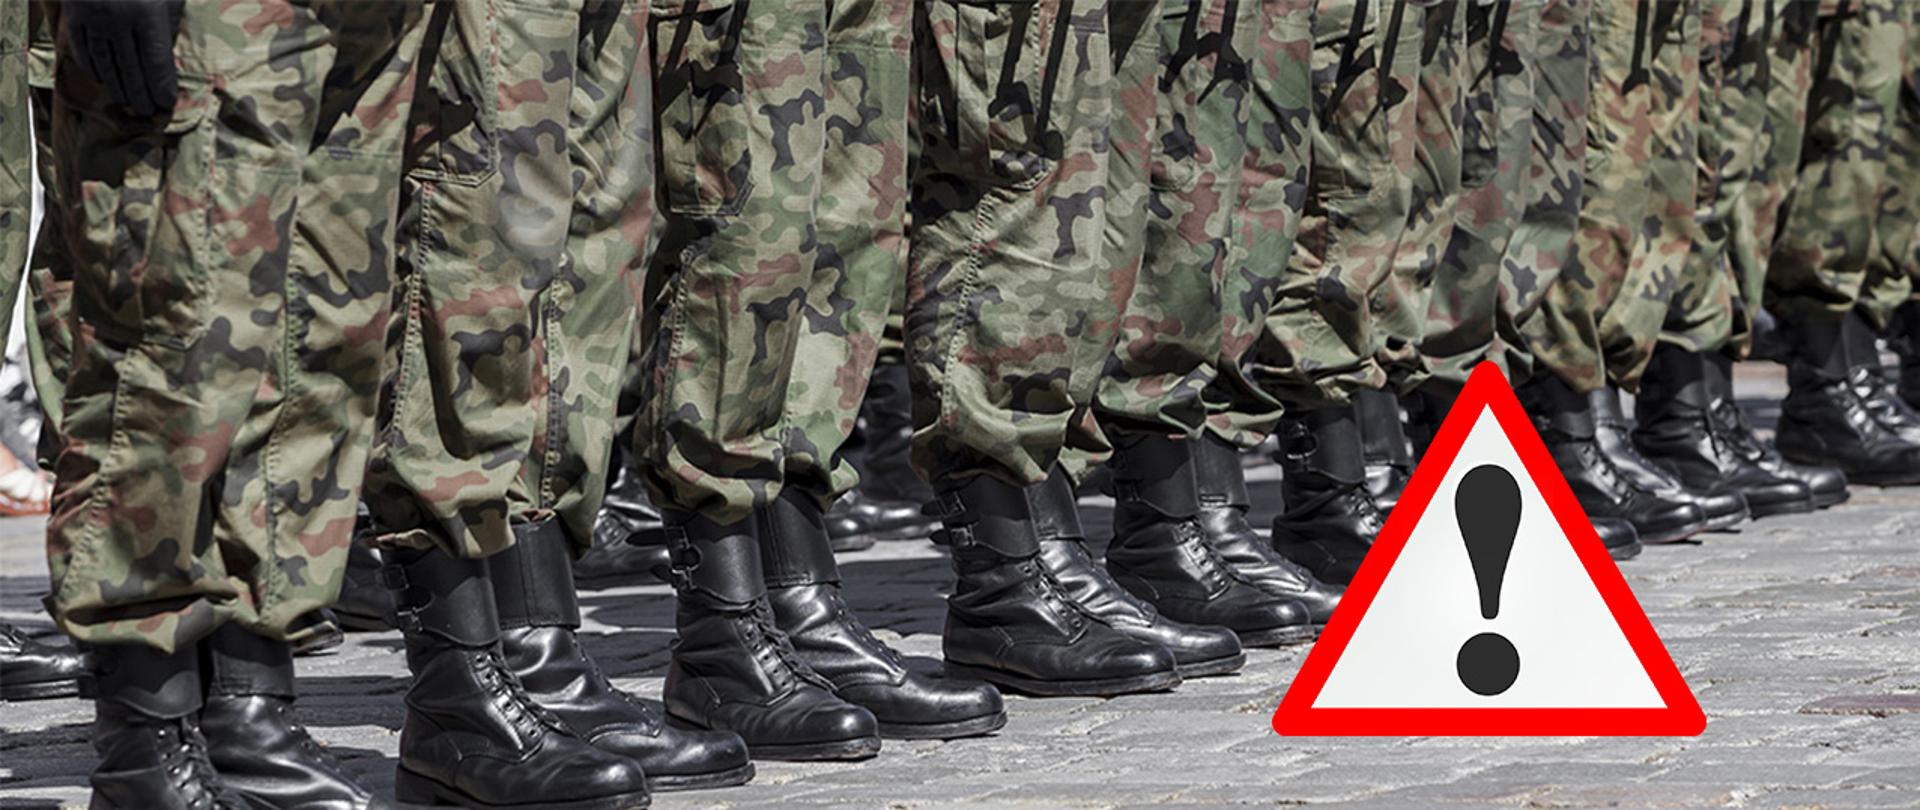 Tłem do grafiki jest zdjęcie przedstawiające widoczne w rzędzie nogi ubrane w spodnie w kolorze moro i w butach wojskowych. Na to zdjęcie został naniesiony znak przypominający znak drogowy oznaczający inne niebezpieczeństwo.